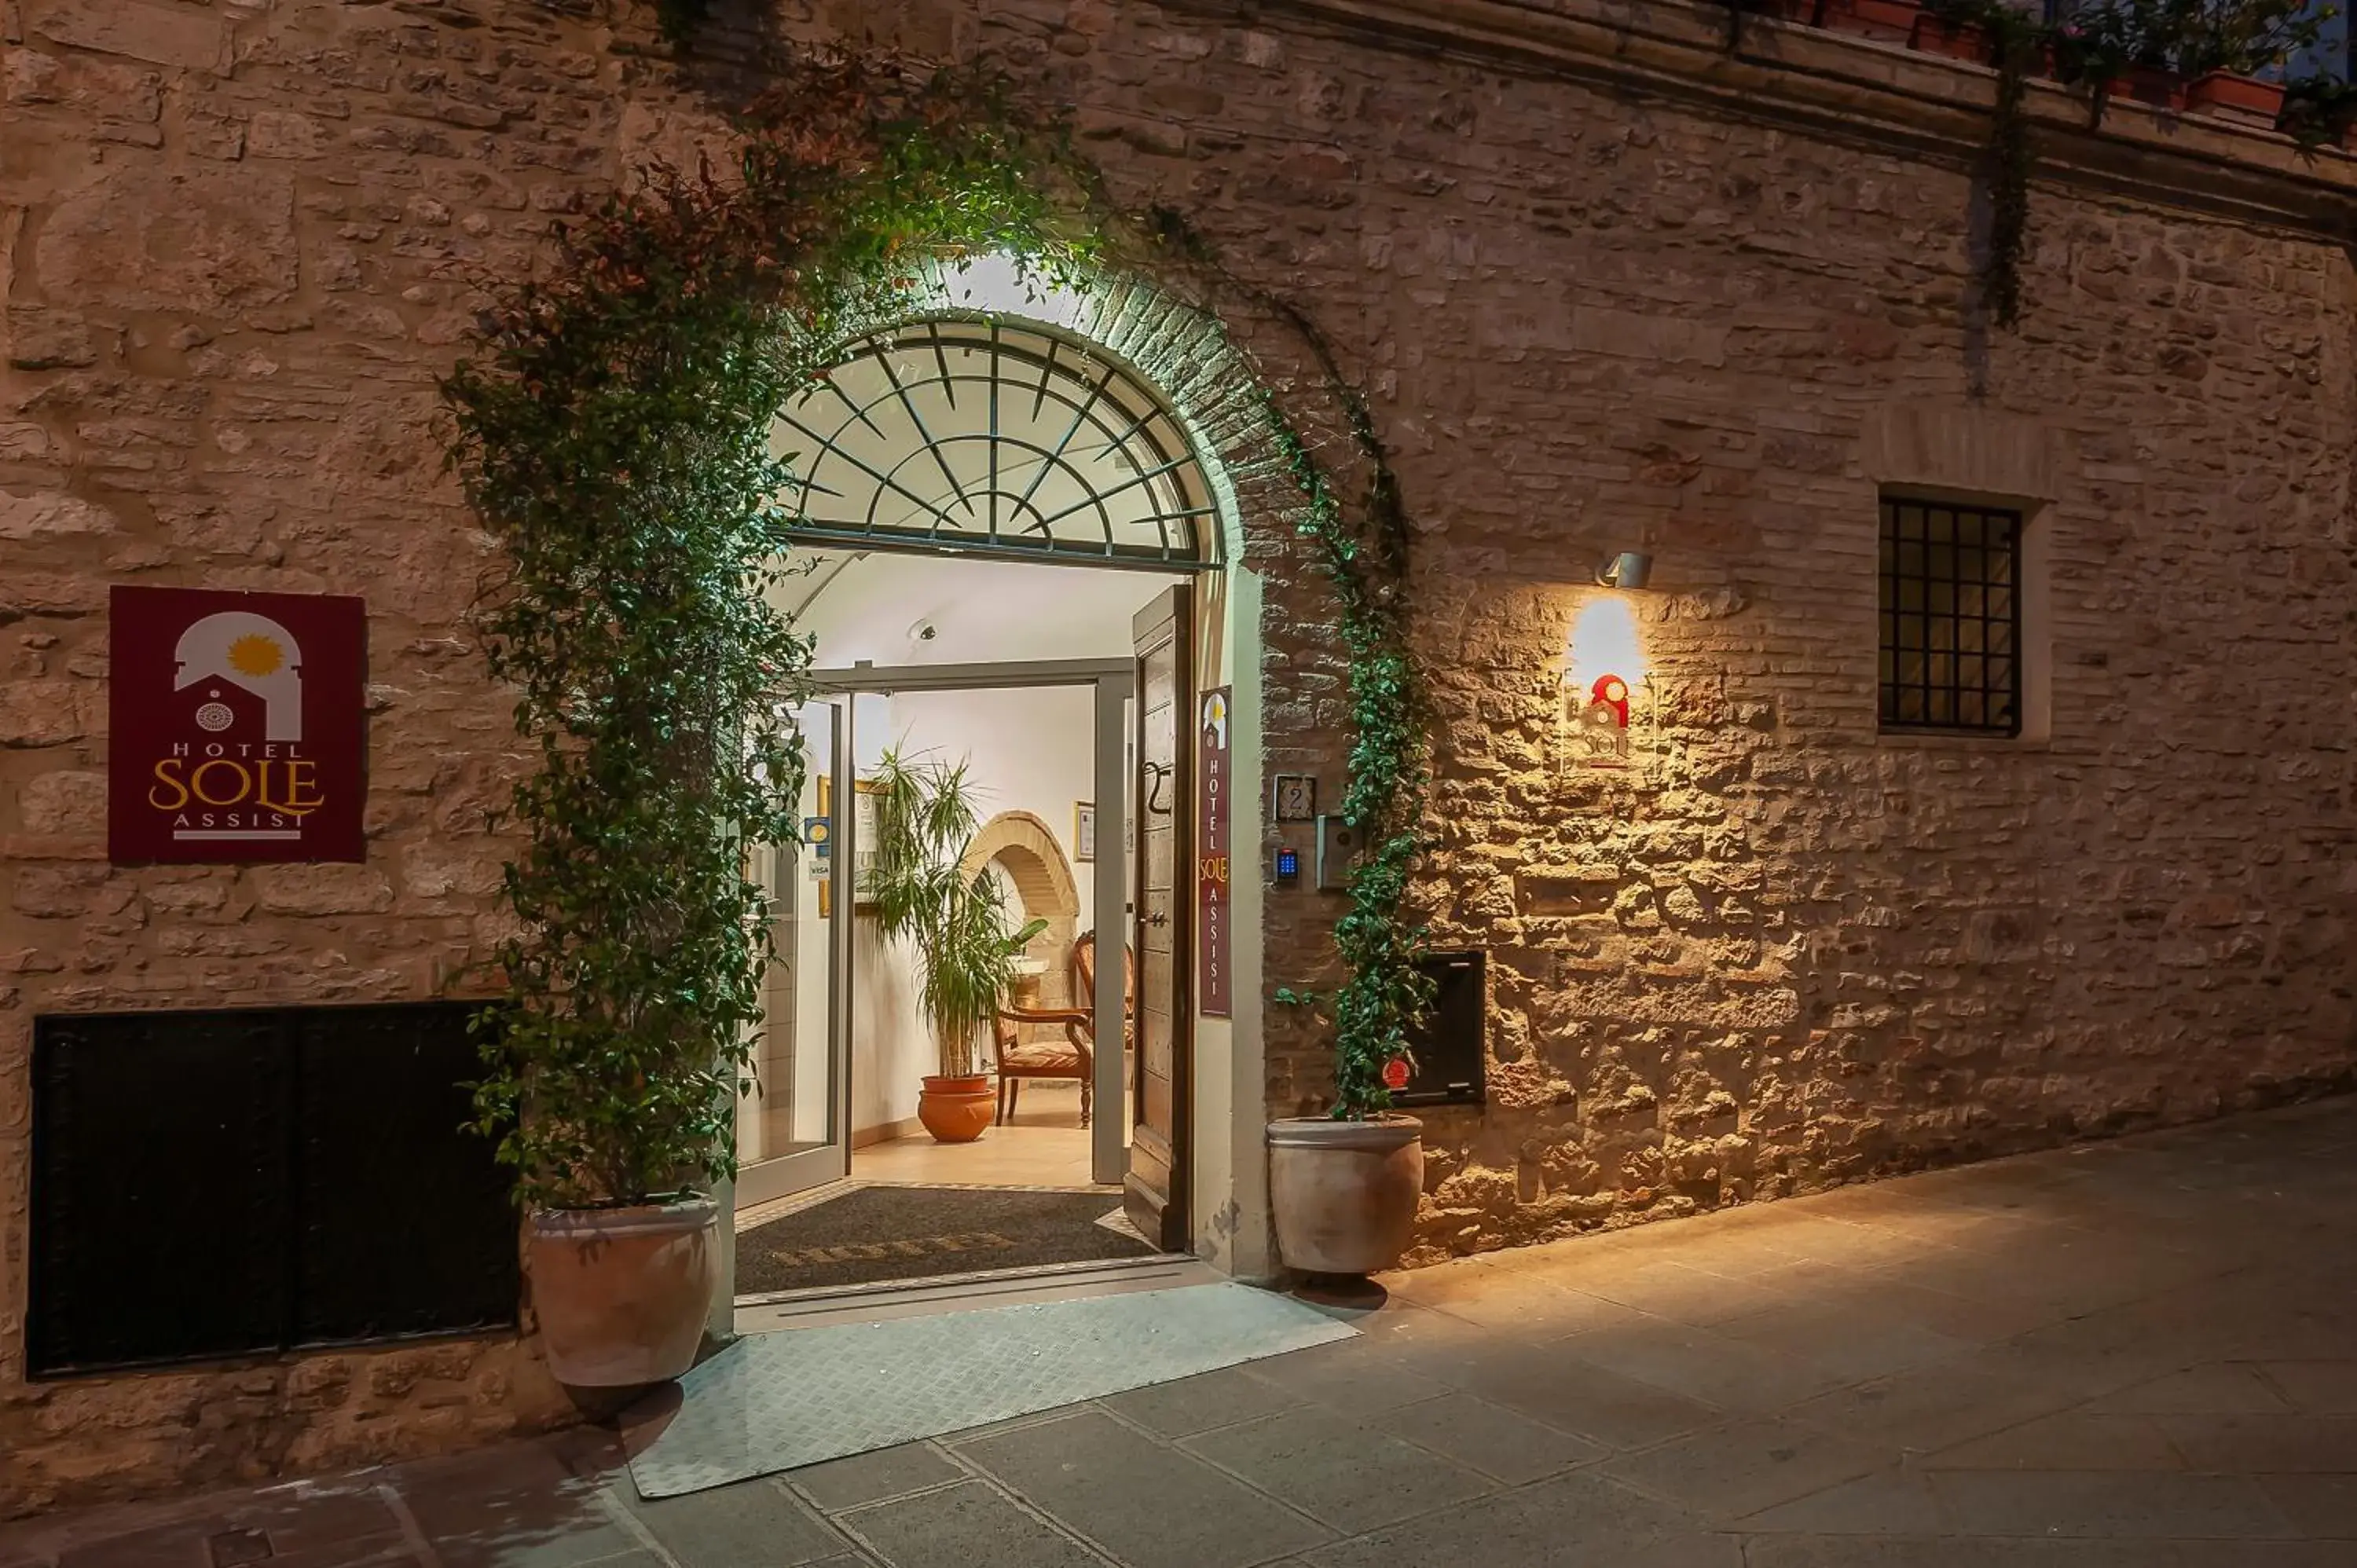 Facade/entrance in Hotel Sole